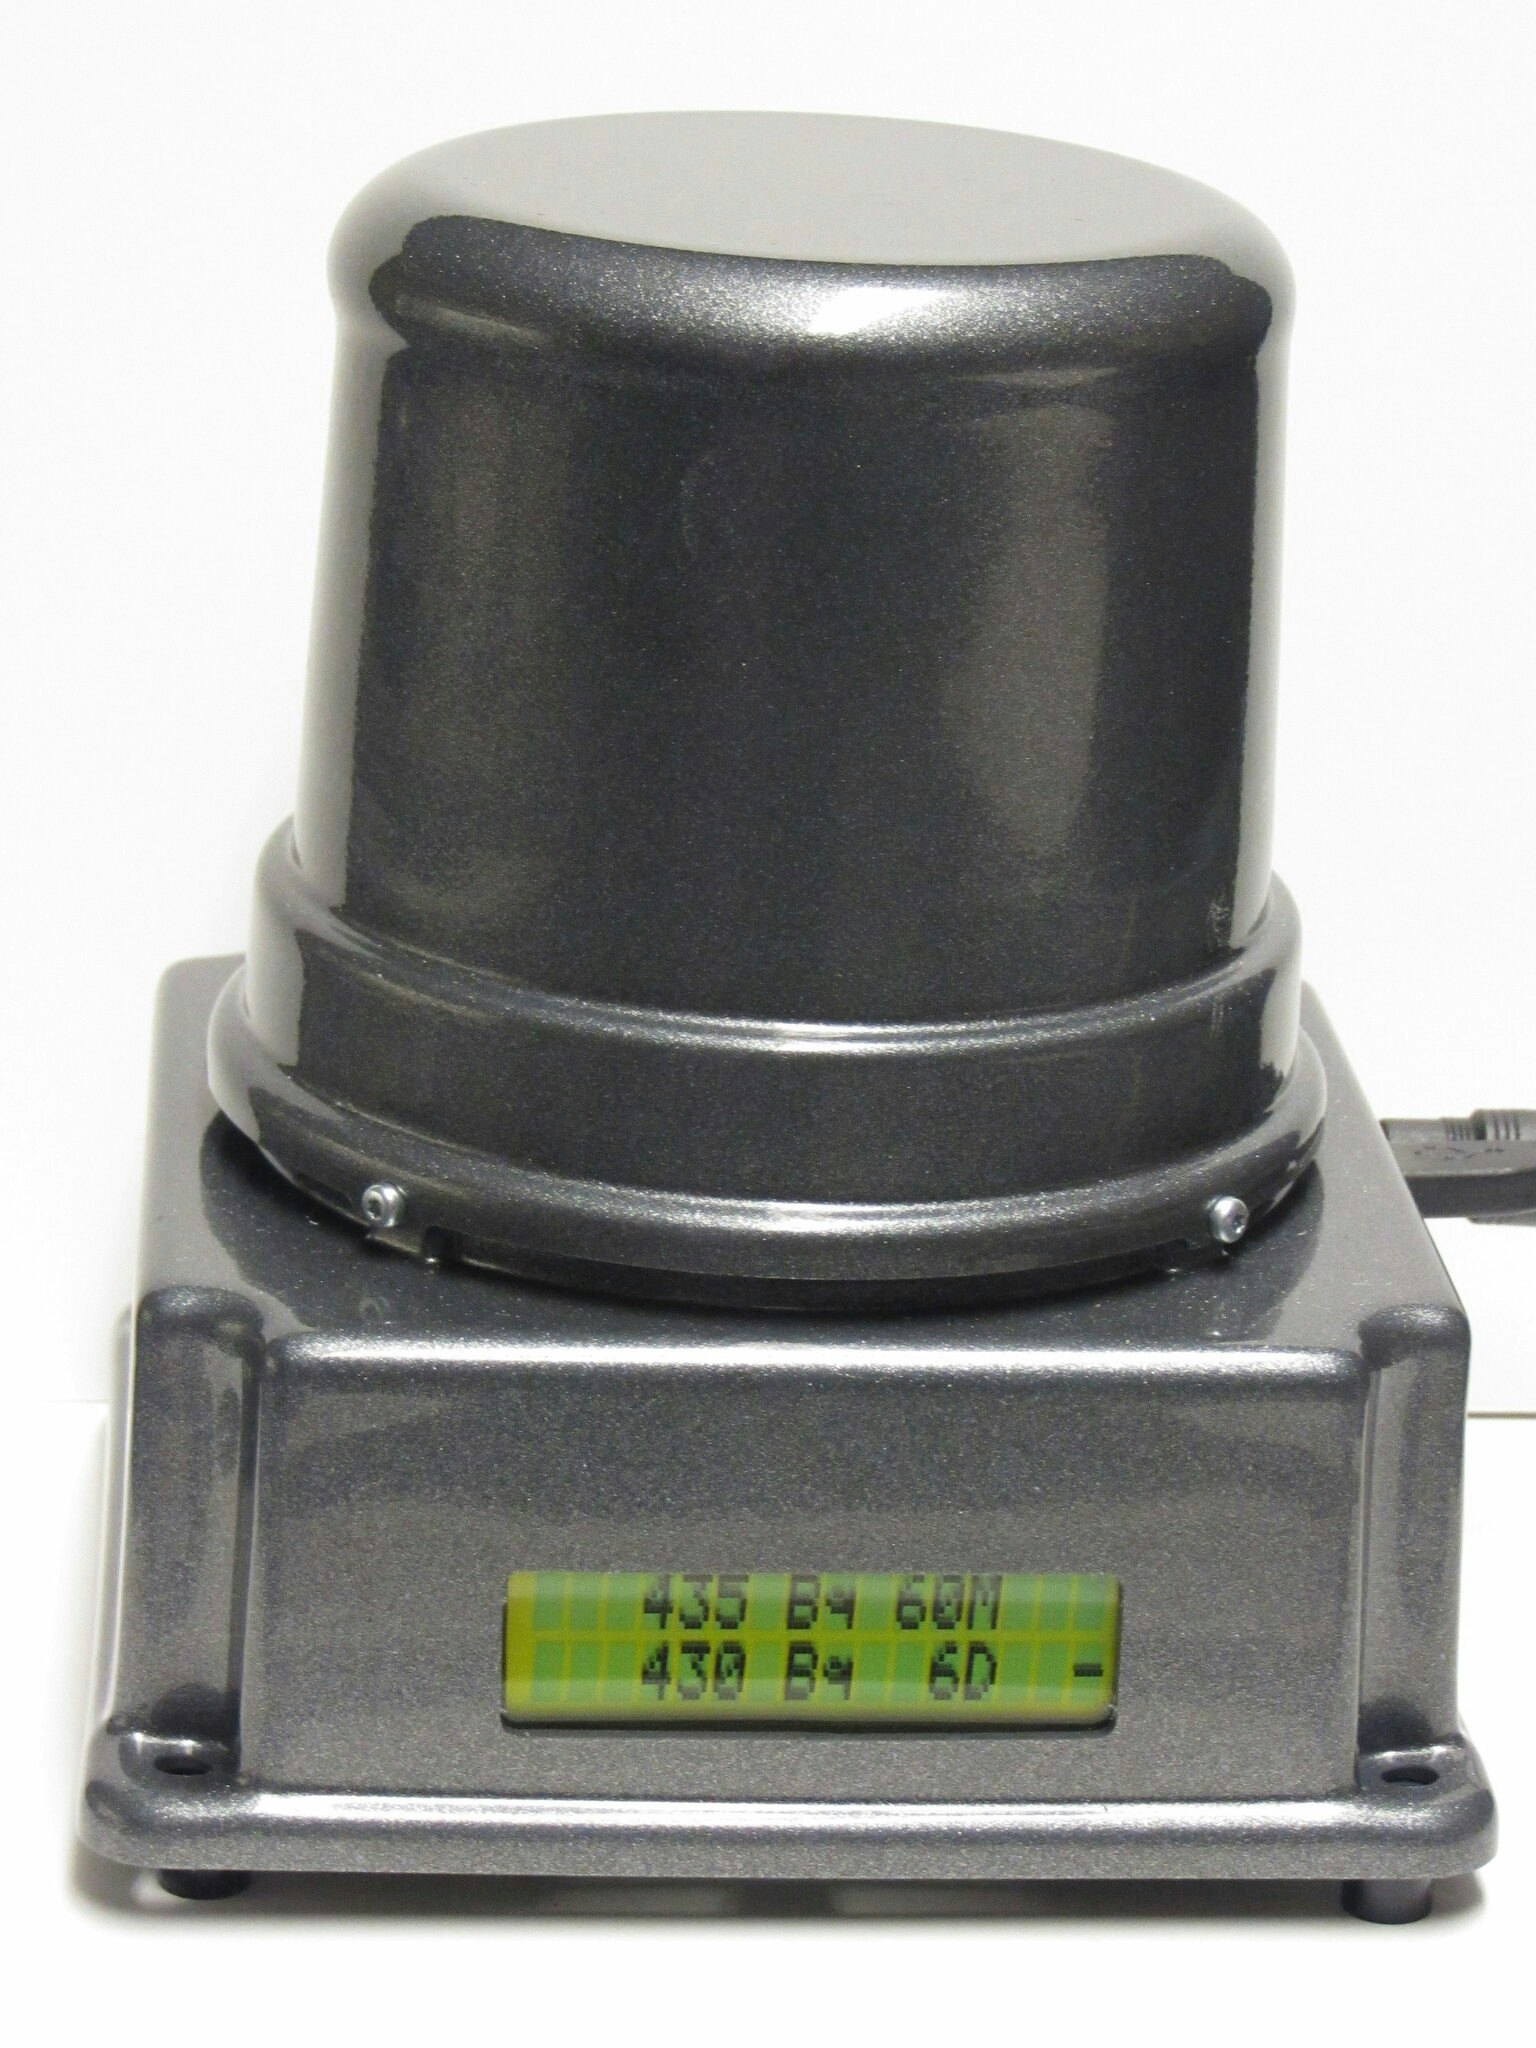 RadoSenseX - LoRaWAN Radon gas detector